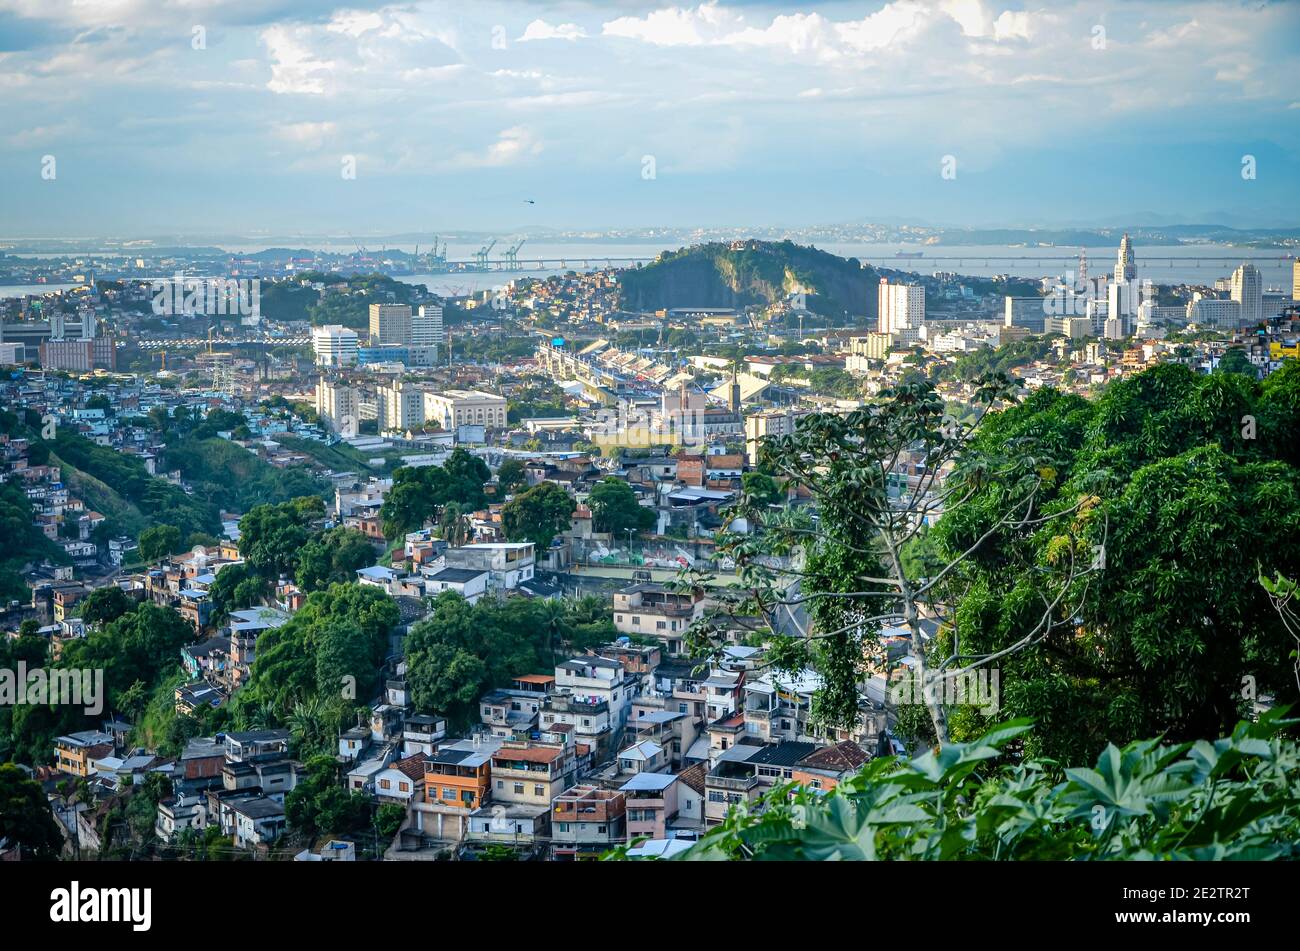 Looking over Rio from Santa Teresa, Rio de Janeiro, Brazil Stock Photo